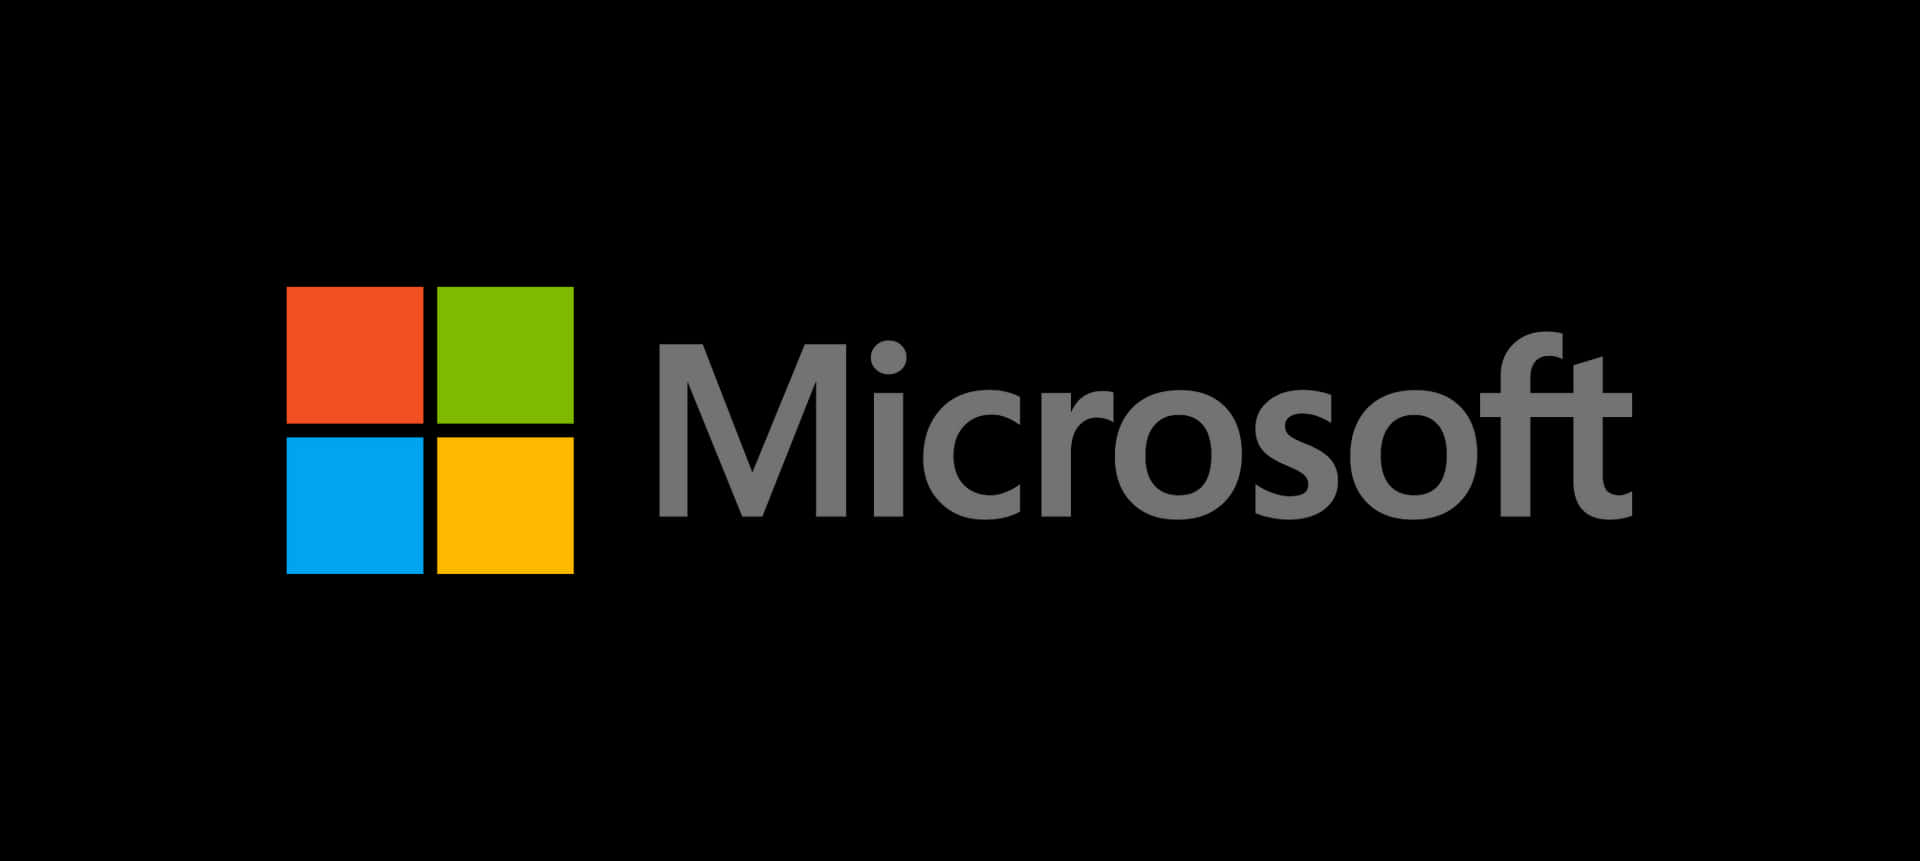 Microsoftlogoet, Der Fremhæver Deres Kontinuerlige Søgen Efter Innovation.